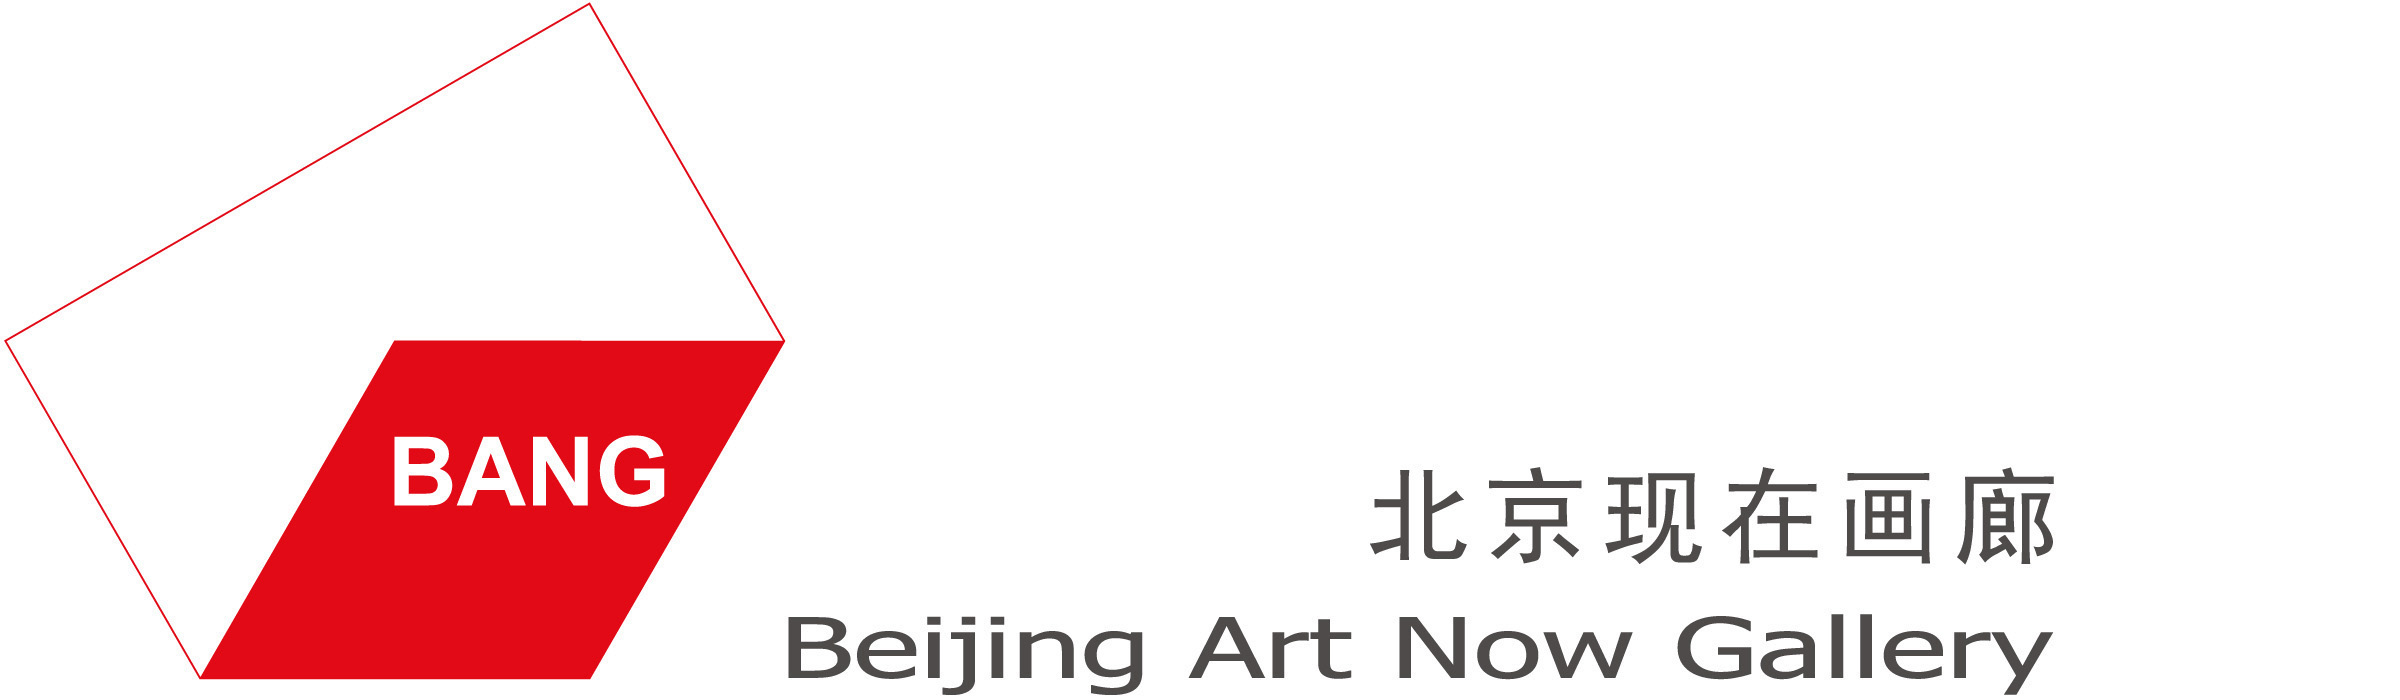 北京现在画廊logo